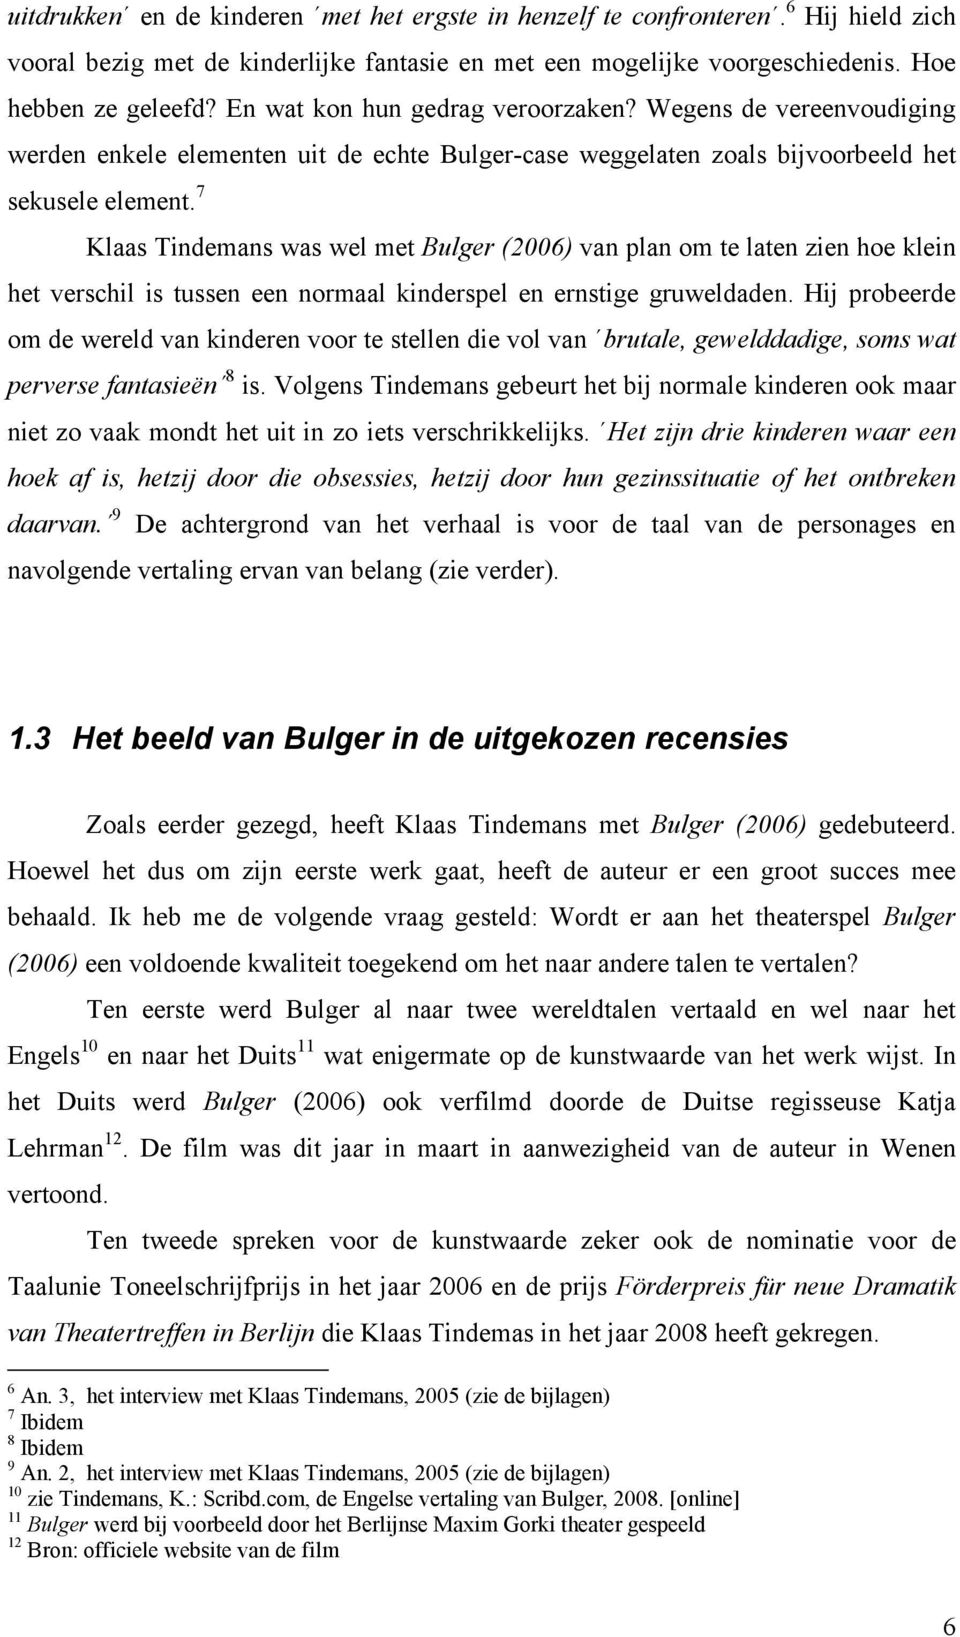 7 Klaas Tindemans was wel met Bulger (2006) van plan om te laten zien hoe klein het verschil is tussen een normaal kinderspel en ernstige gruweldaden.